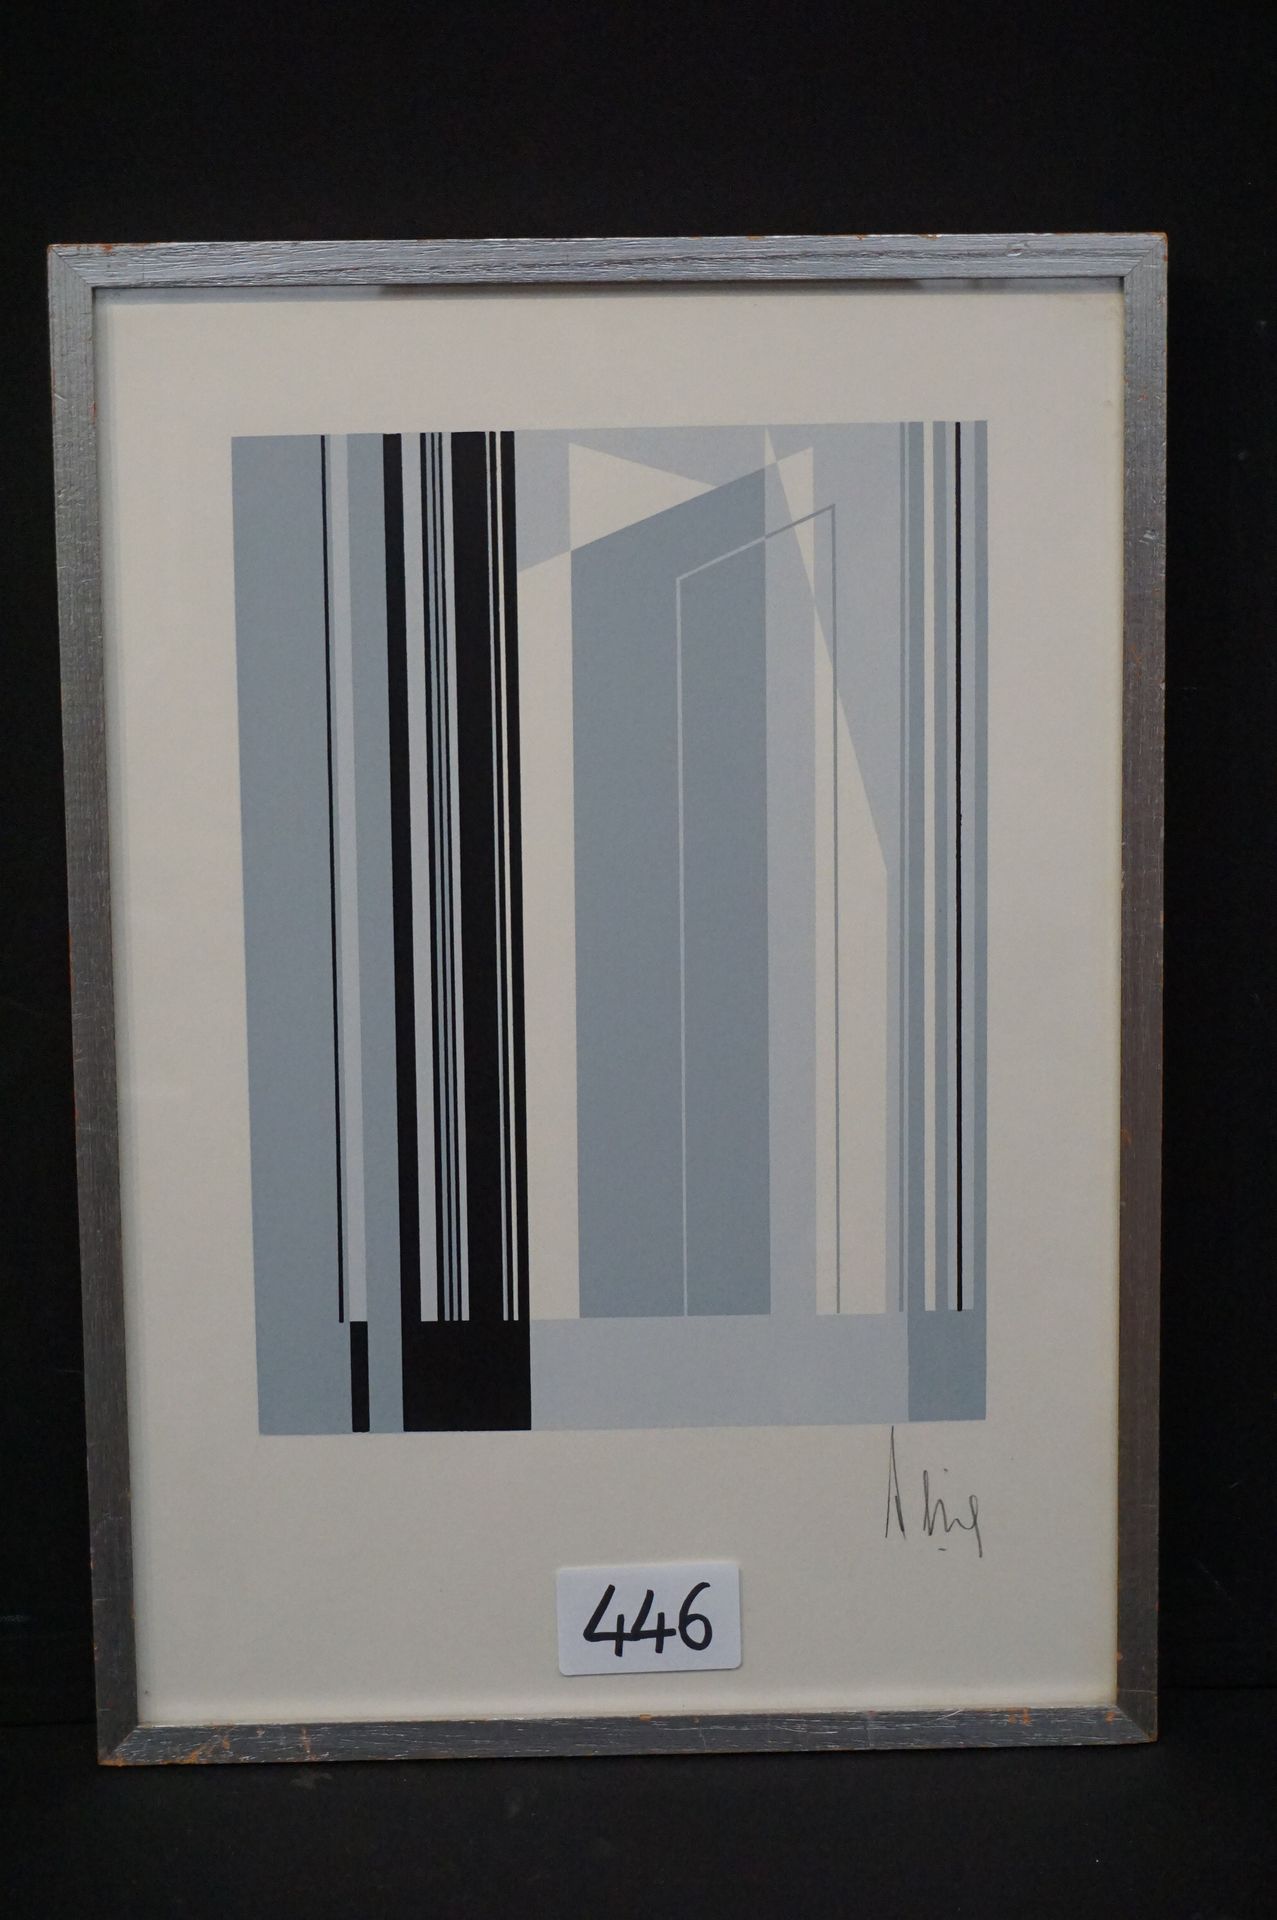 LUC PEIRE (1916 - 1994) "Composizione geometrica" - Litografia - 34 x 25 cm